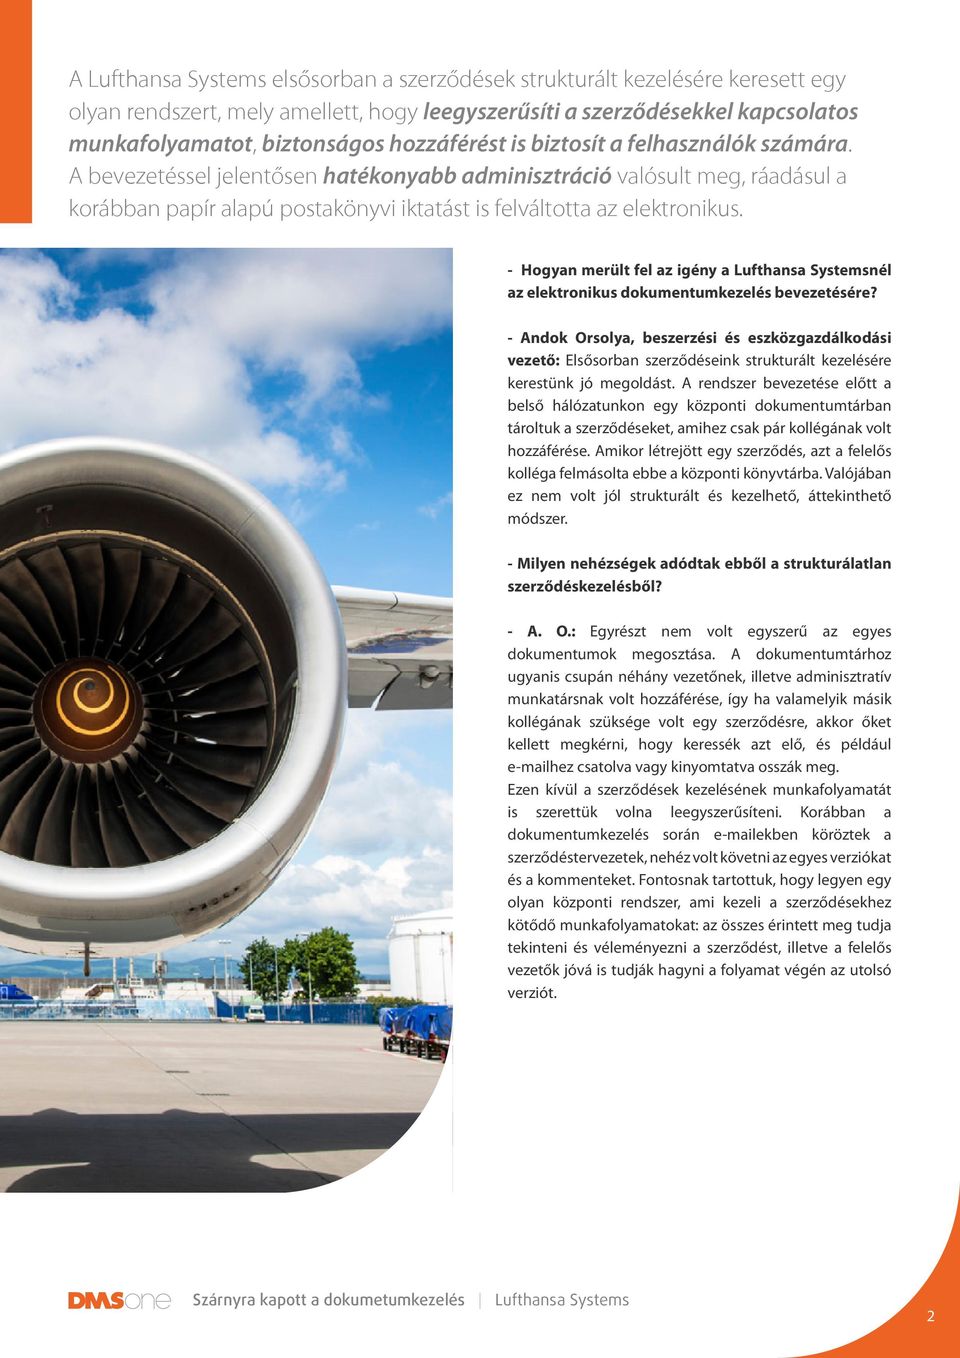 - Hogyan merült fel az igény a Lufthansa Systemsnél az elektronikus dokumentumkezelés bevezetésére?